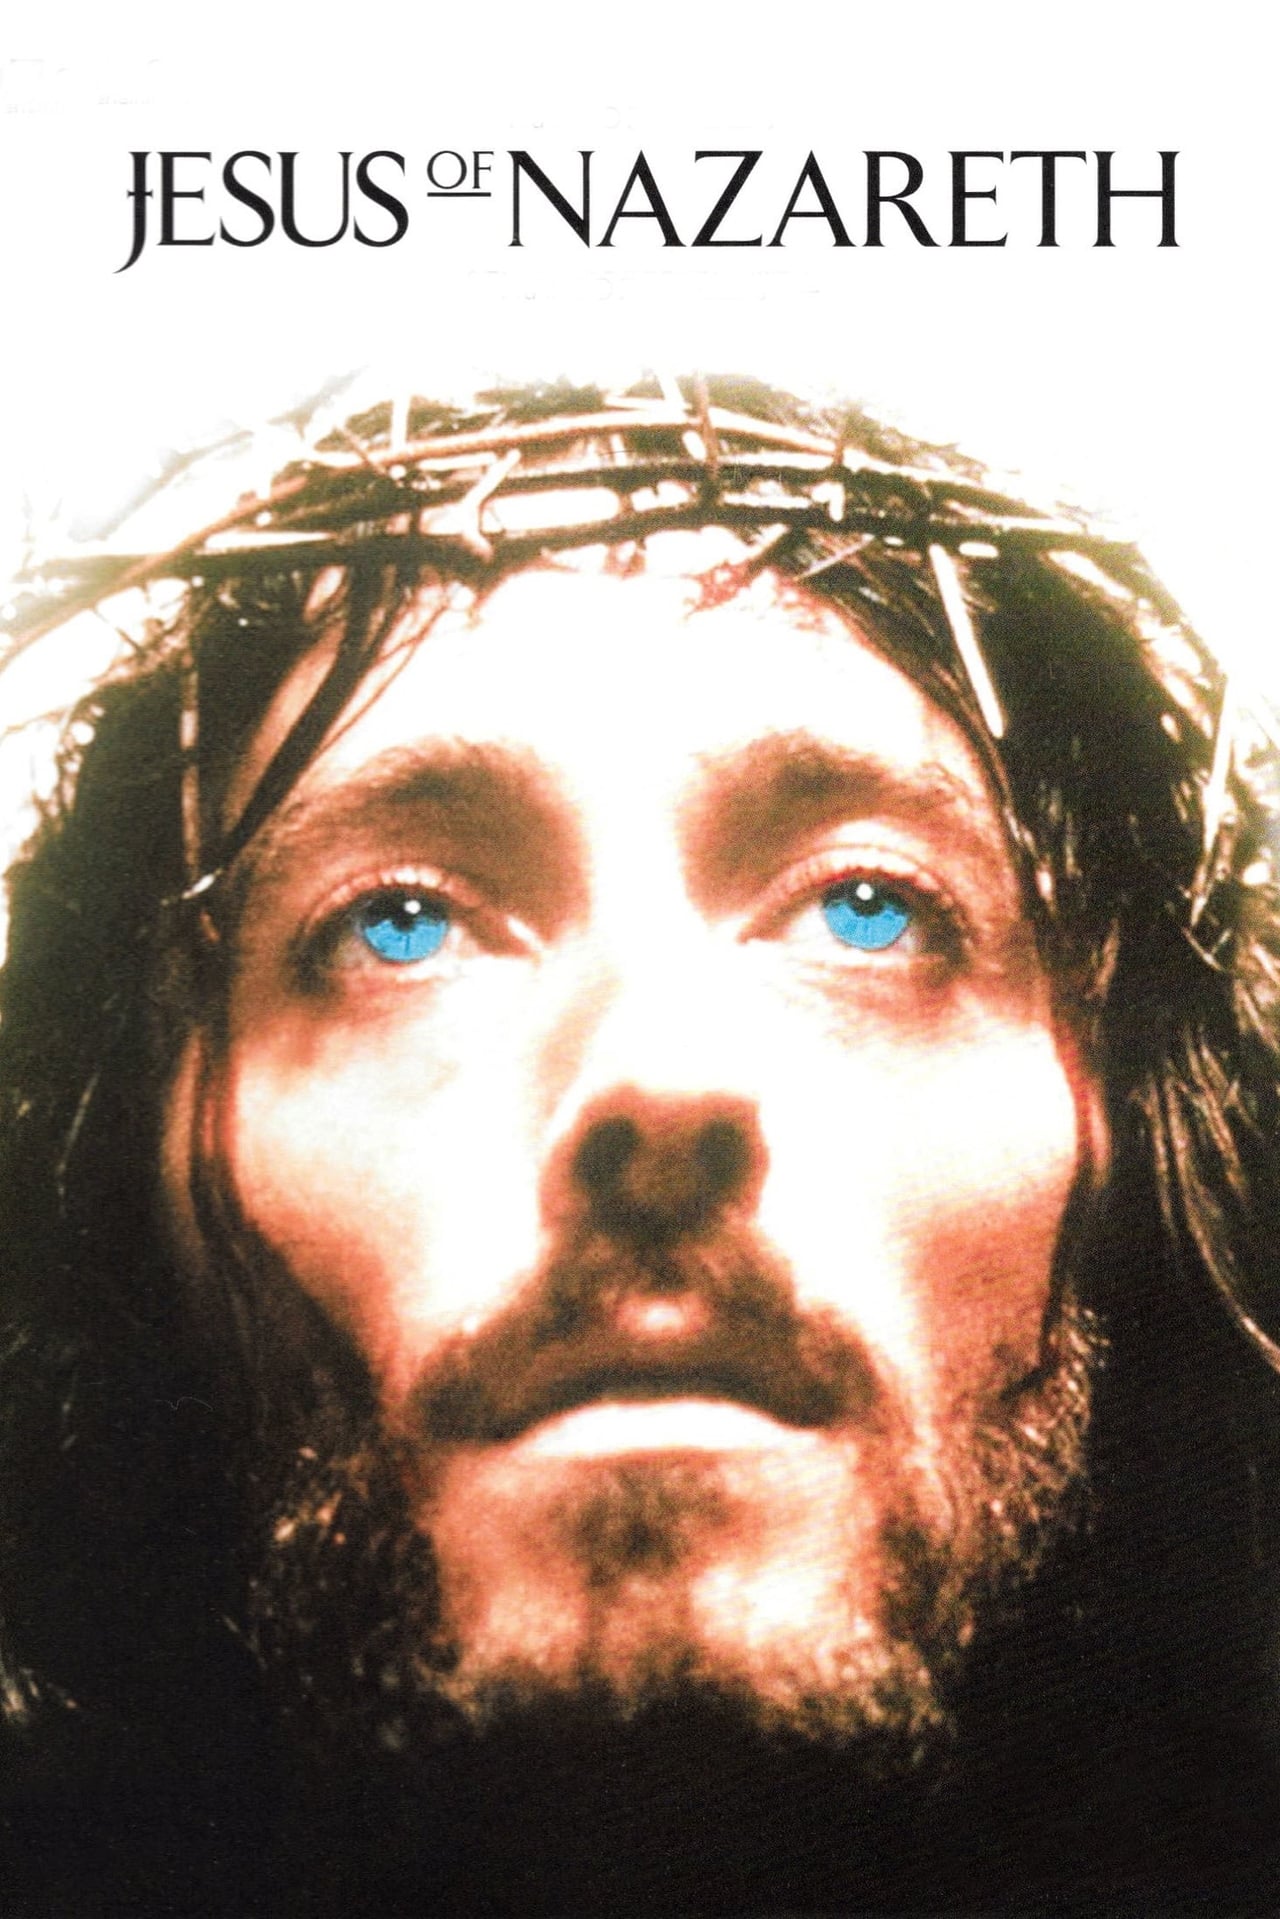 NF - Jesus of Nazareth Part 3